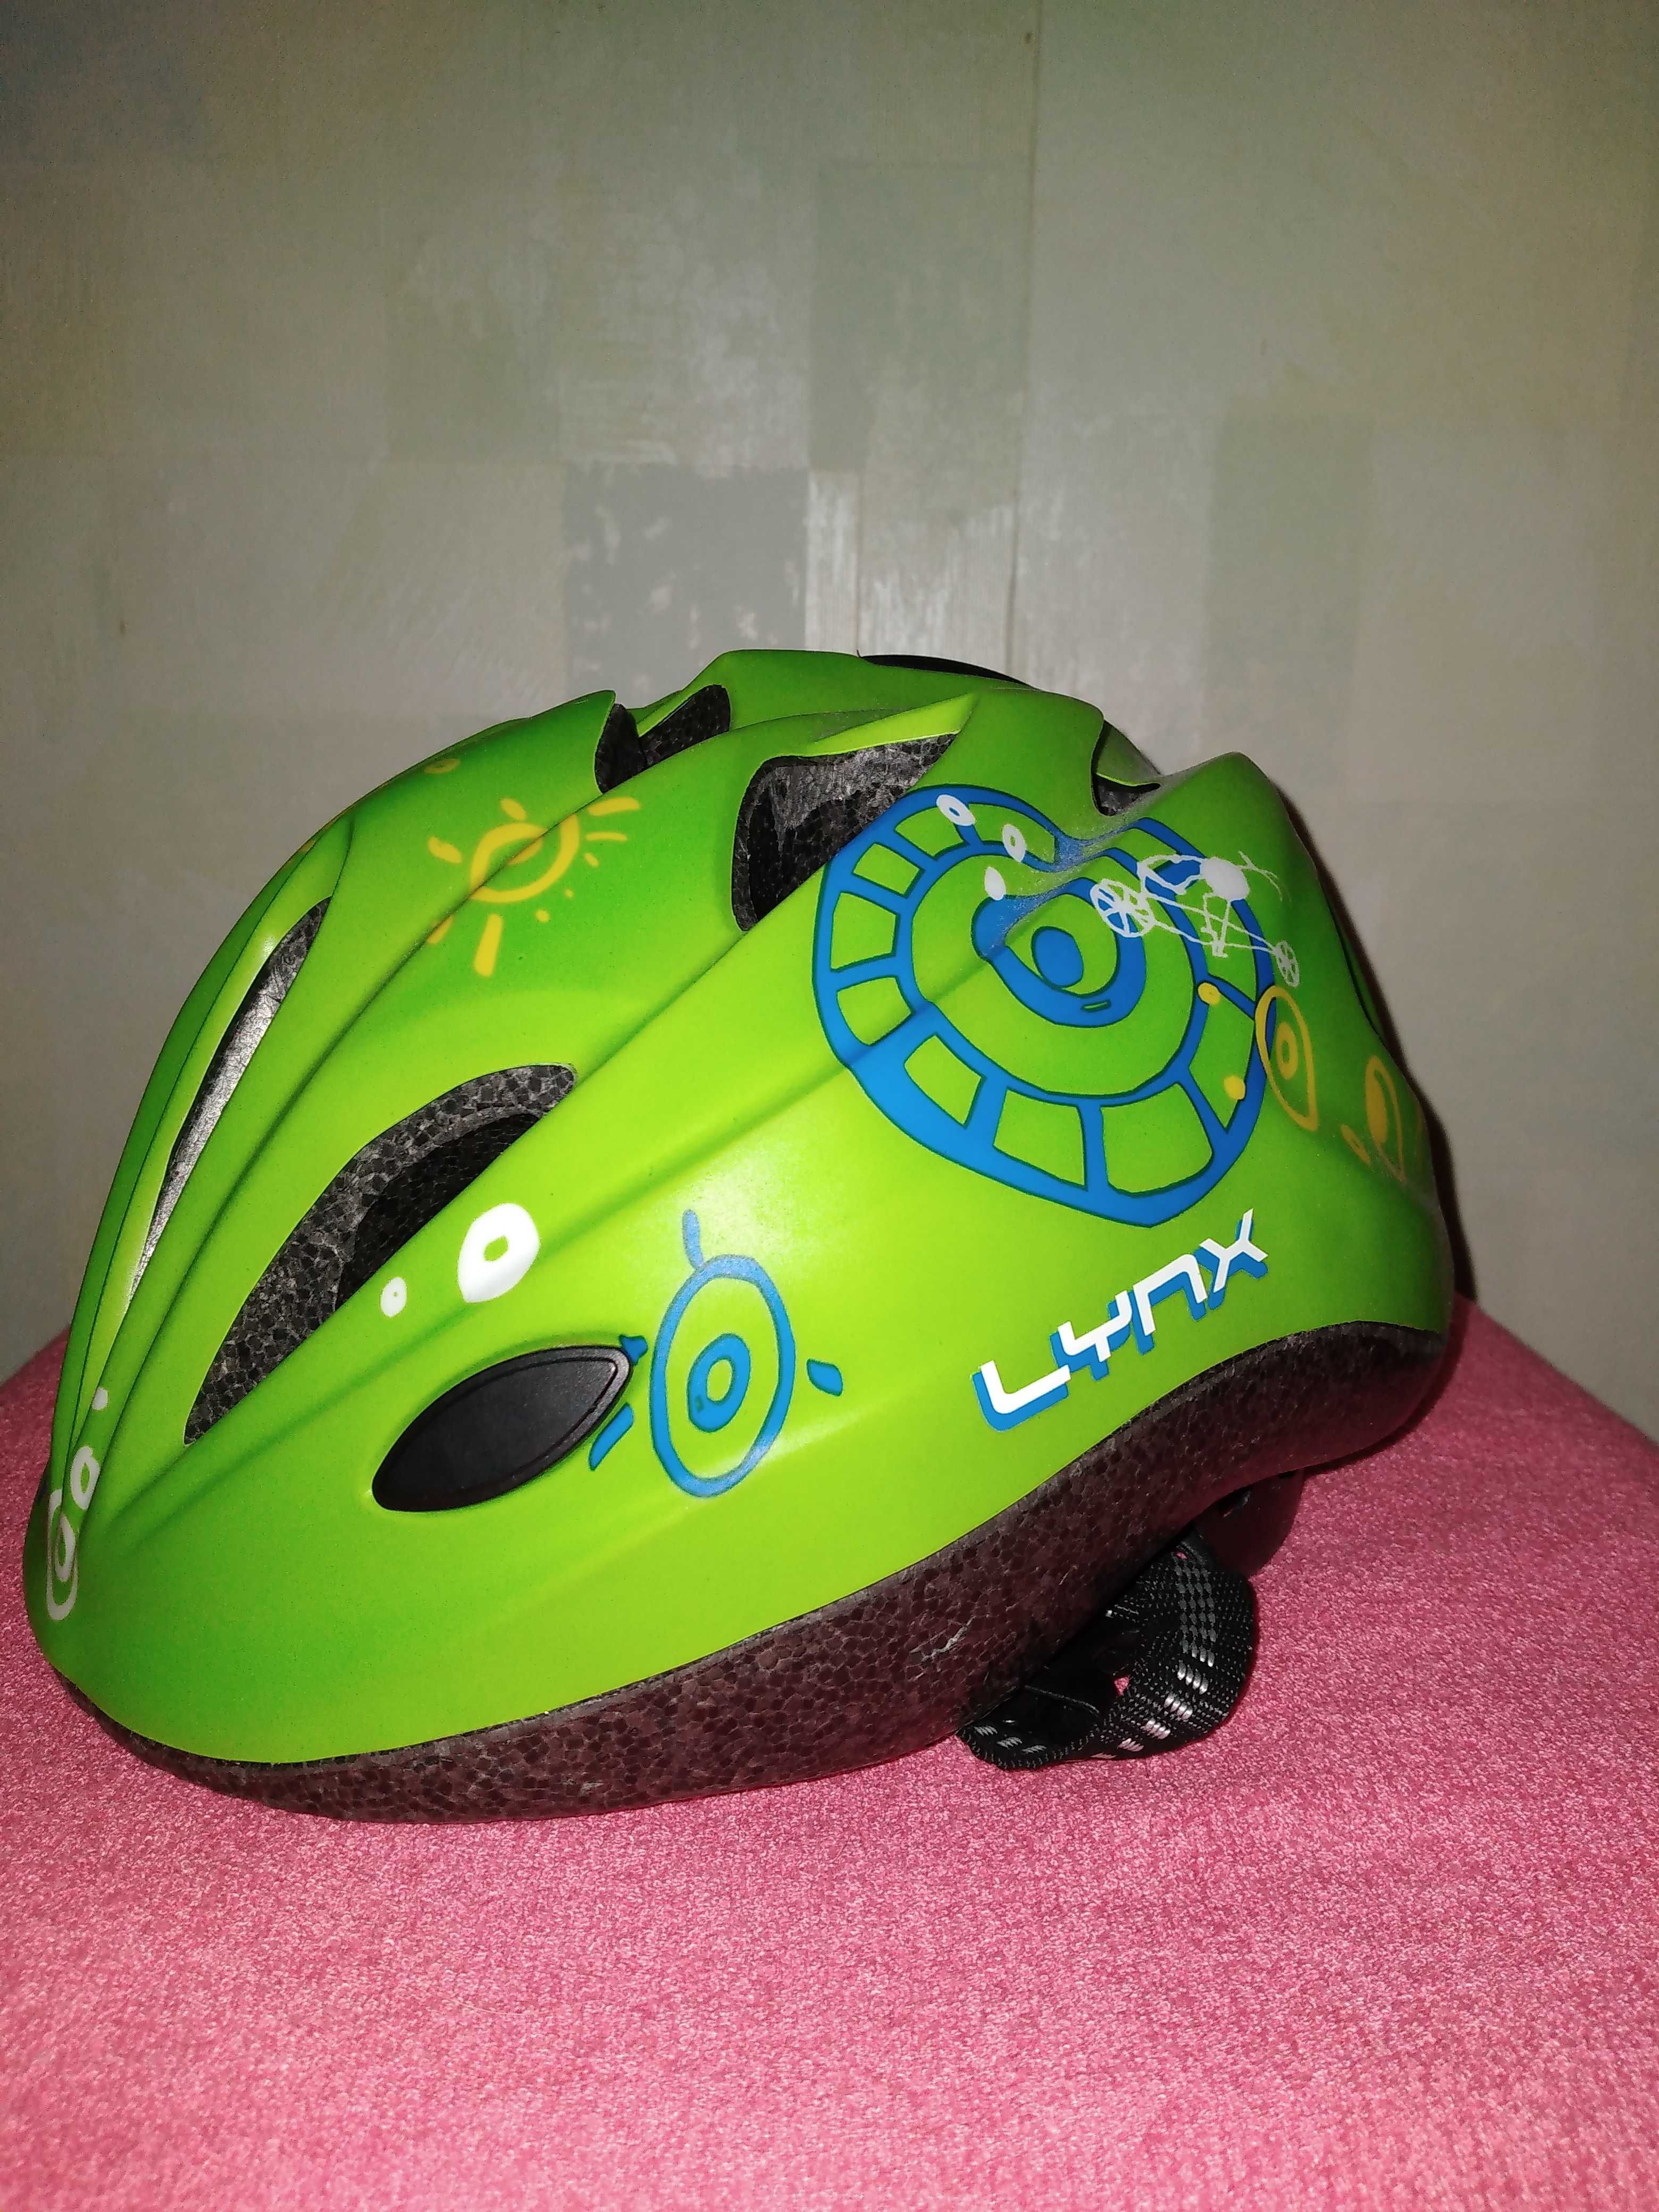 Lynx шлем защитный детский размер М 52-56 см